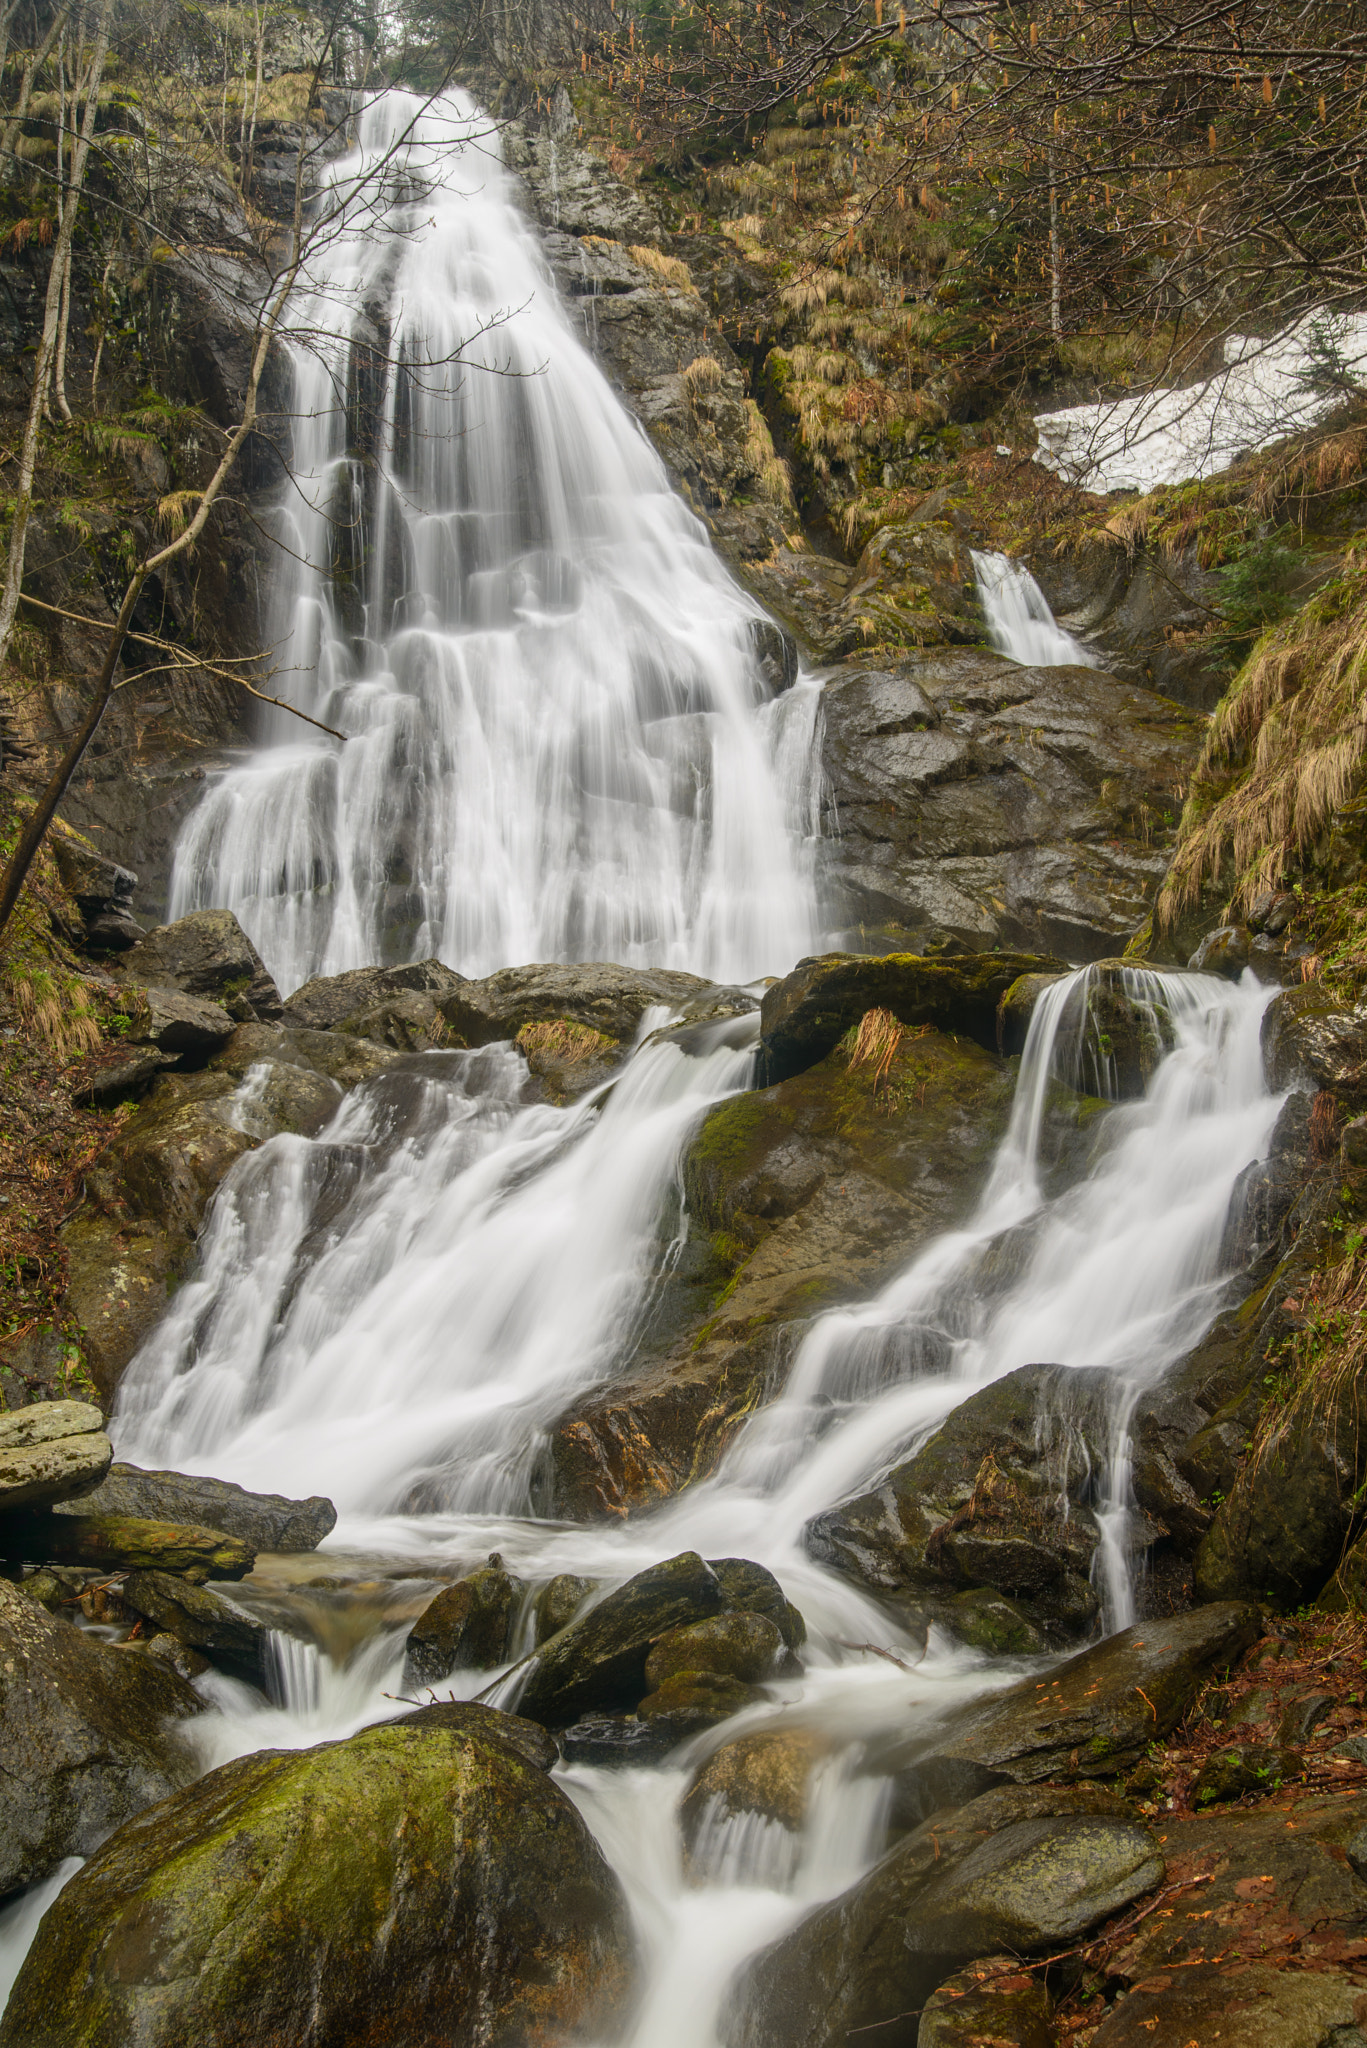 Nikon D800 + Tamron AF 28-75mm F2.8 XR Di LD Aspherical (IF) sample photo. Saut waterfall photography